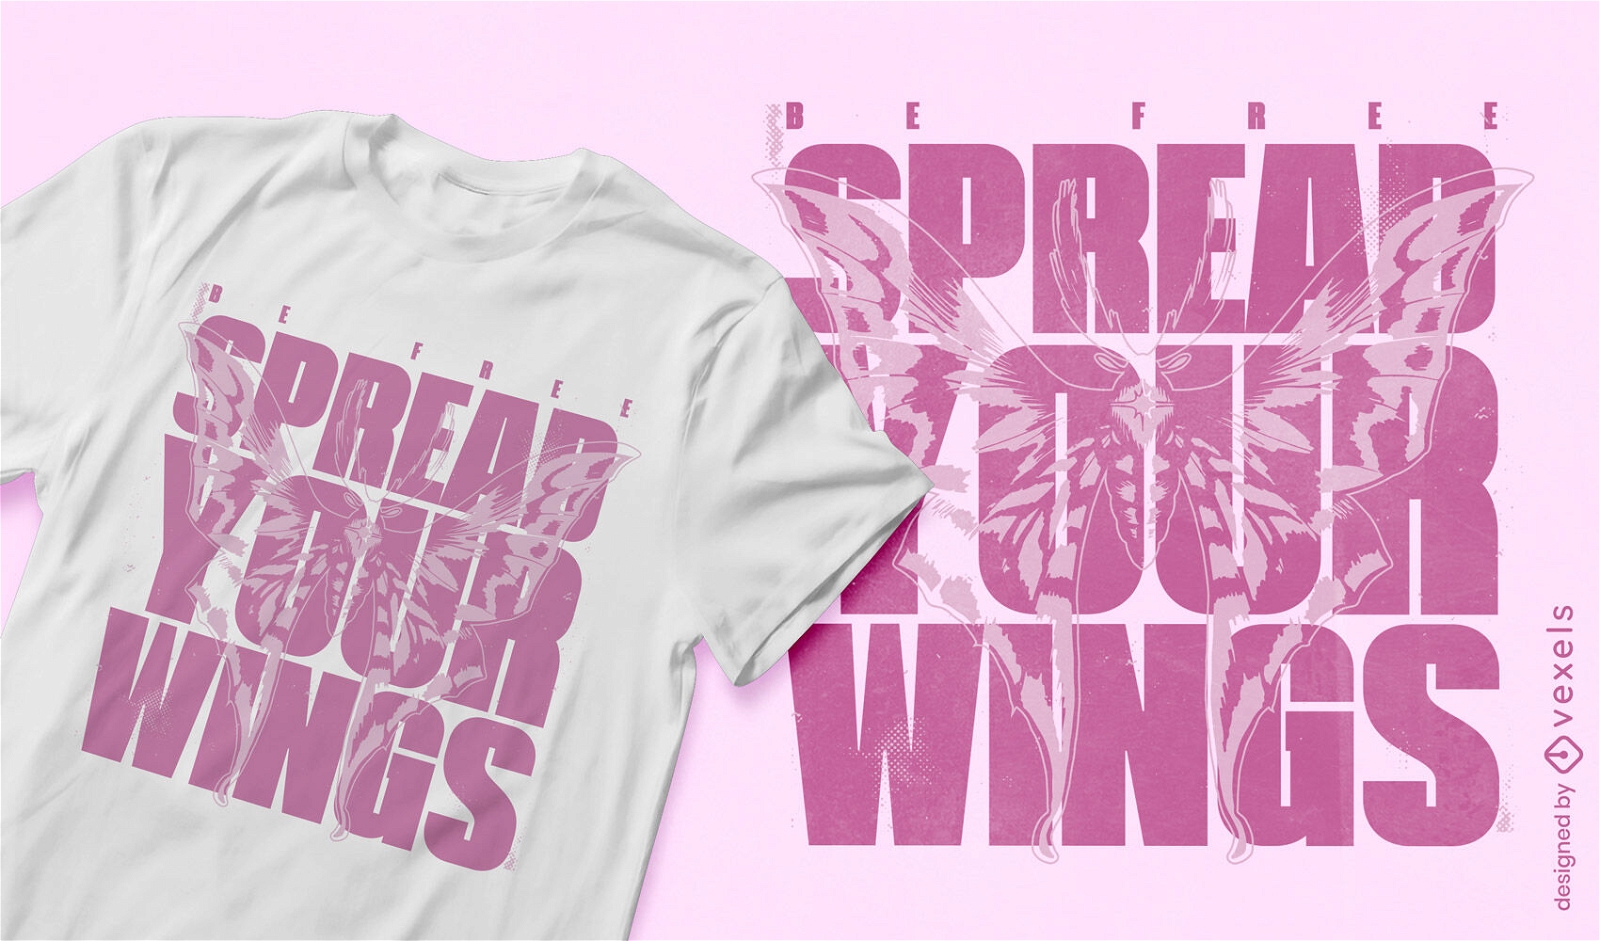 Extiende tus alas diseño de camiseta rosa.